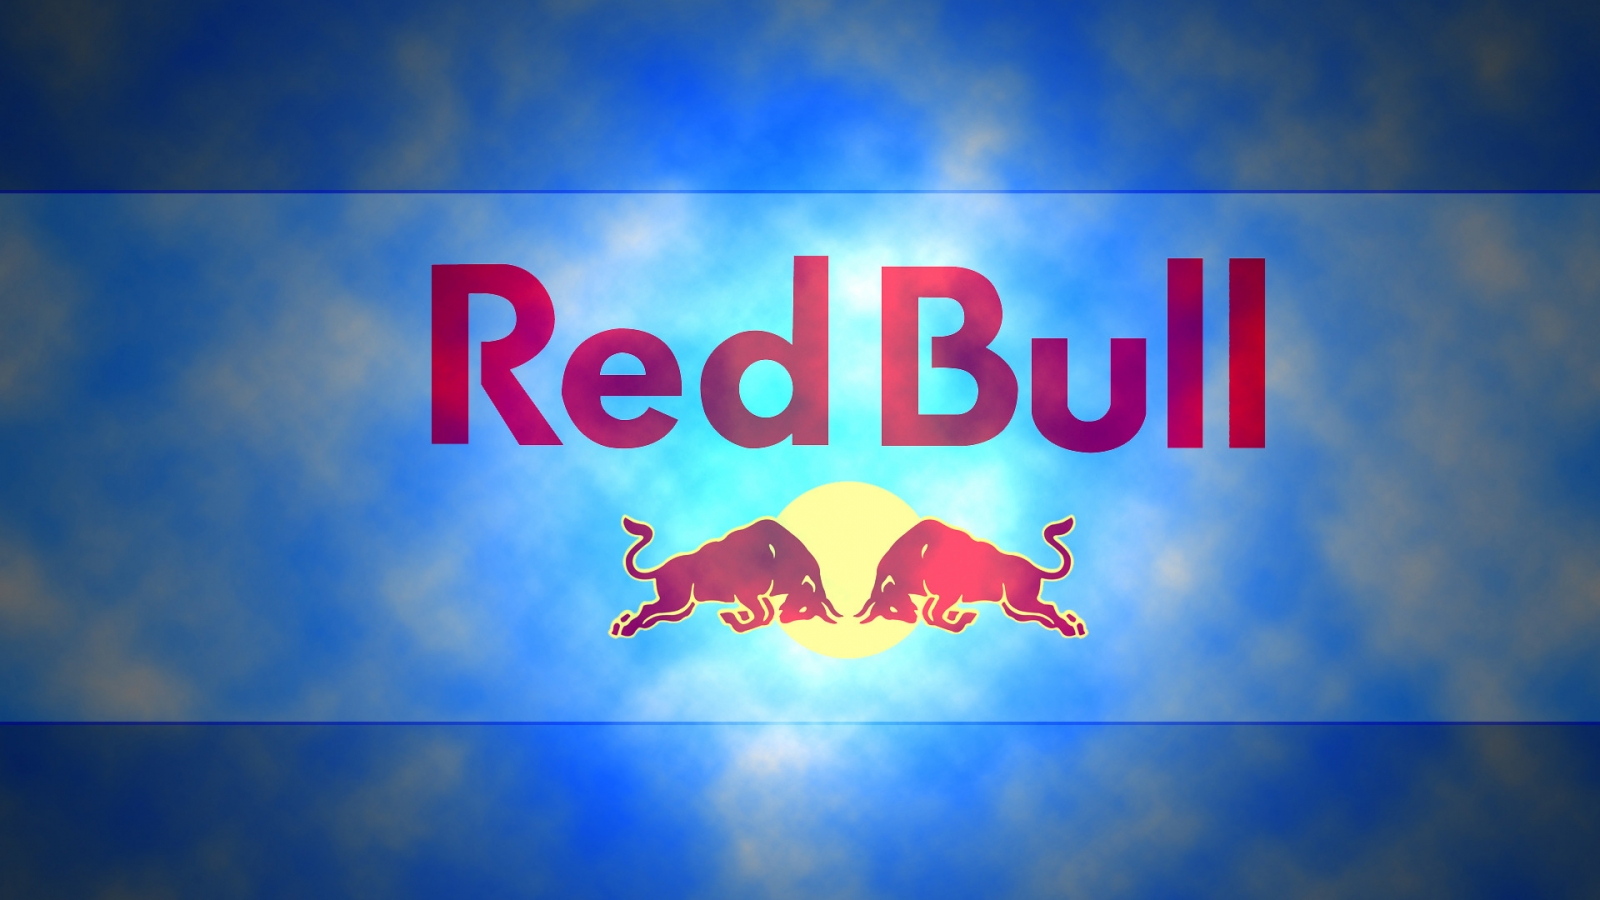 Red Bull Logo for 1600 x 900 HDTV resolution